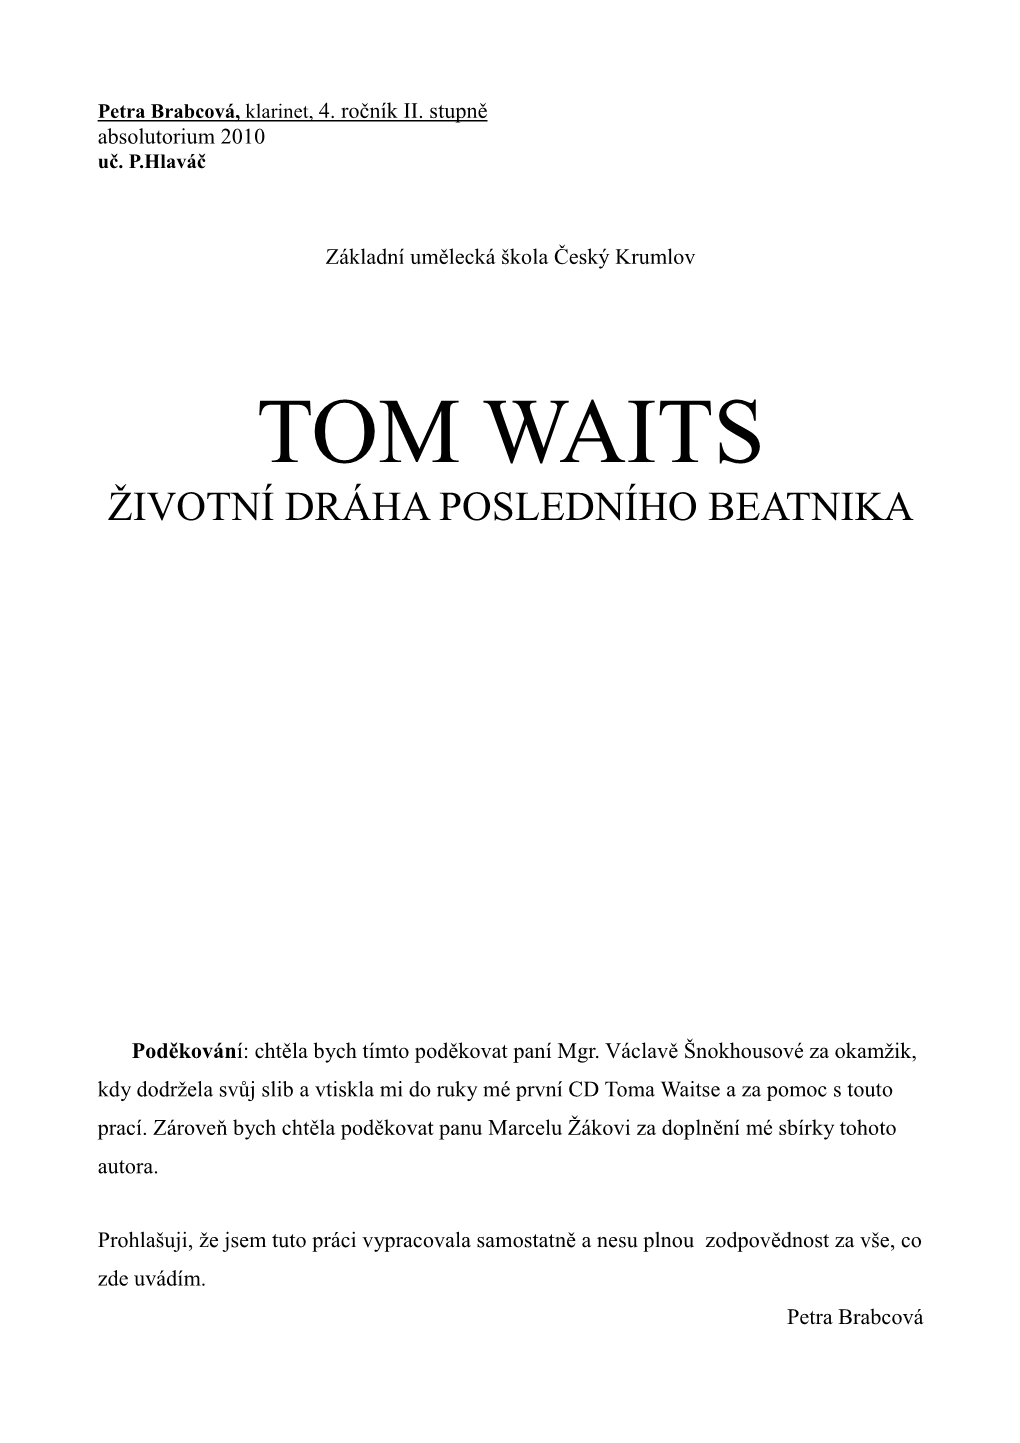 Tom Waits Životní Dráha Posledního Beatnika